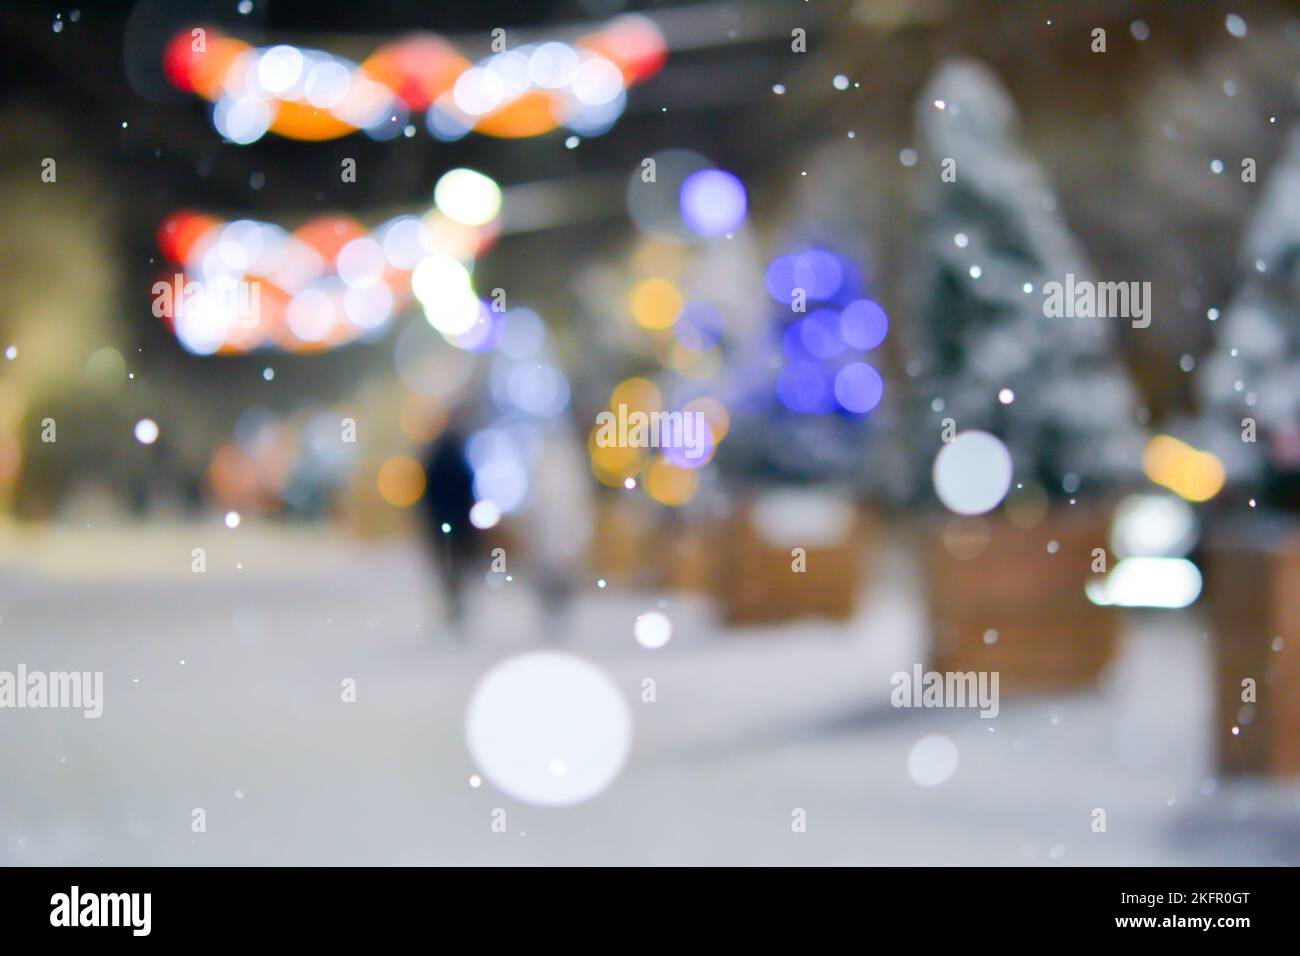 Résumé arrière-plan flou. Beaucoup d'arbres de Noël décorés se tiennent le long de la rue décorée avec un éclairage lumineux, des lumières lumineuses et des guirlandes dans la ville pendant de fortes chutes de neige la nuit d'hiver Banque D'Images